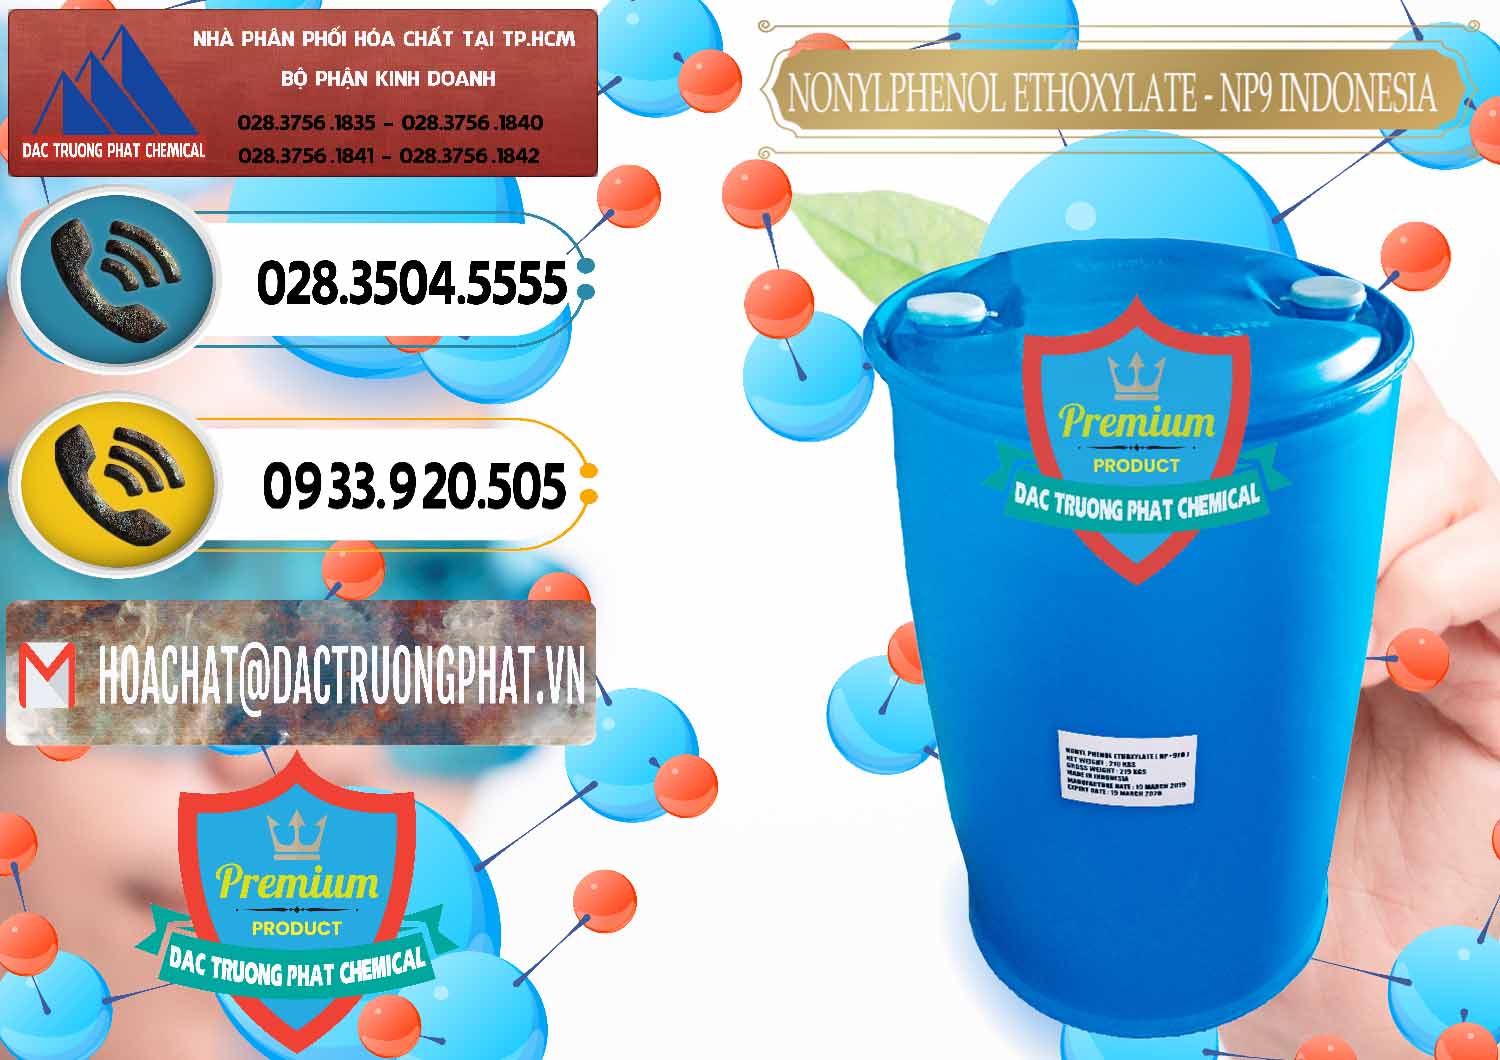 Cty chuyên bán và cung ứng NP9 - Nonyl Phenol Ethoxylate Indonesia - 0317 - Cty chuyên phân phối và nhập khẩu hóa chất tại TP.HCM - hoachatdetnhuom.vn